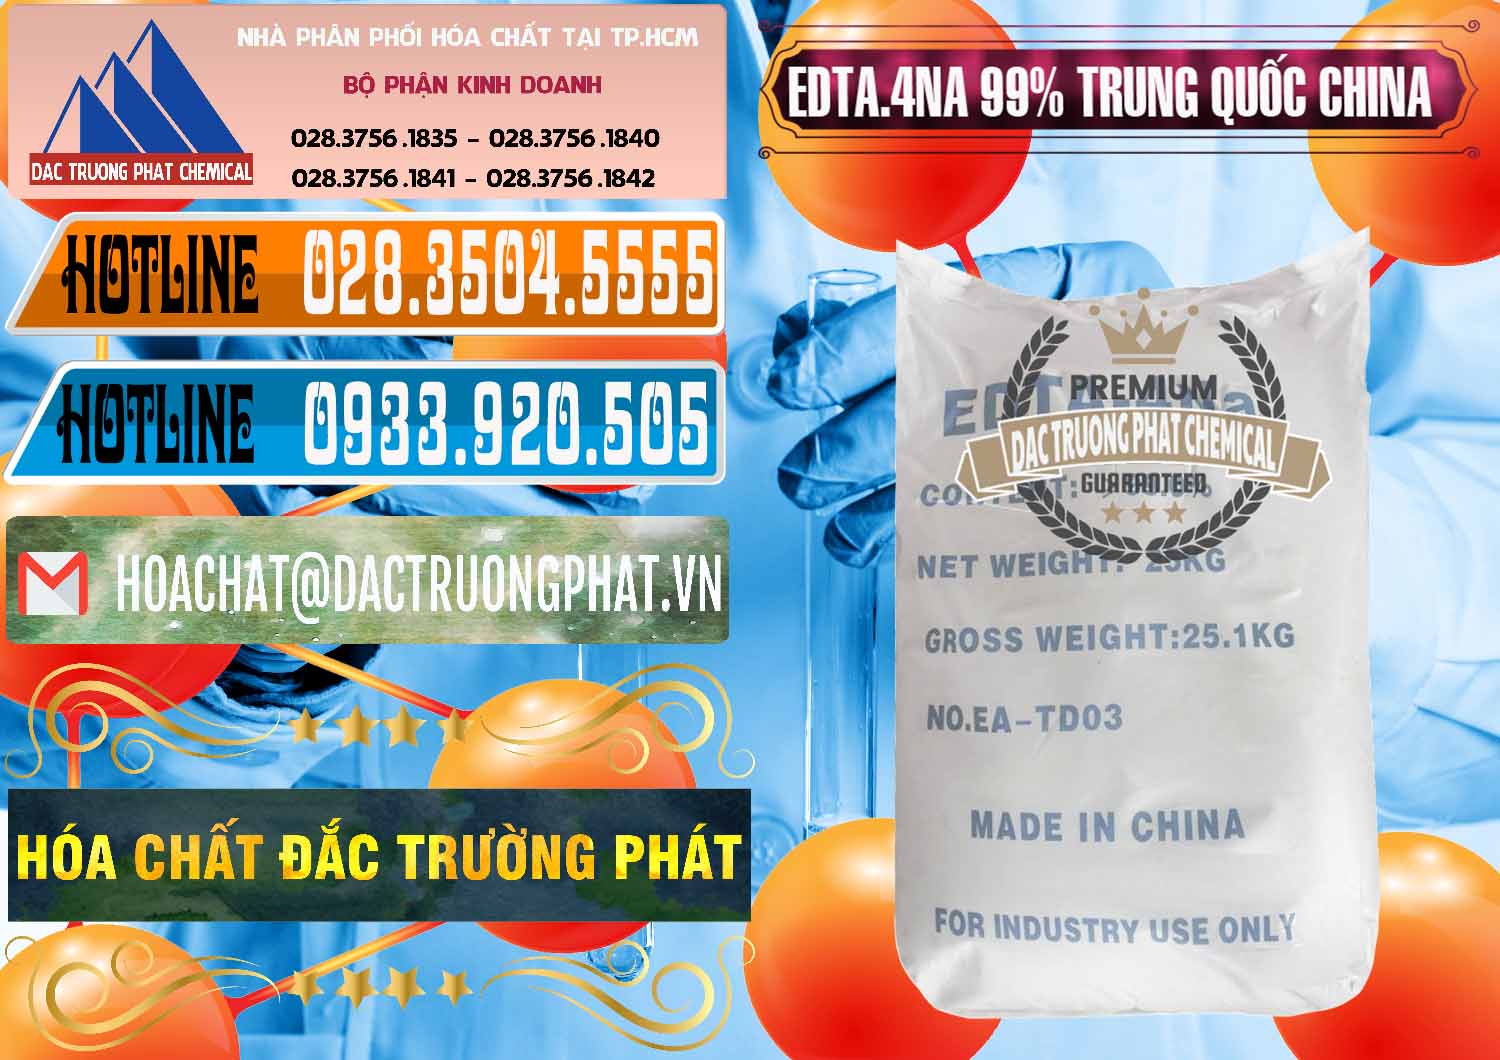 Chuyên bán ( phân phối ) EDTA.4NA - EDTA Muối 99% Trung Quốc China - 0292 - Chuyên cung cấp - kinh doanh hóa chất tại TP.HCM - stmp.net